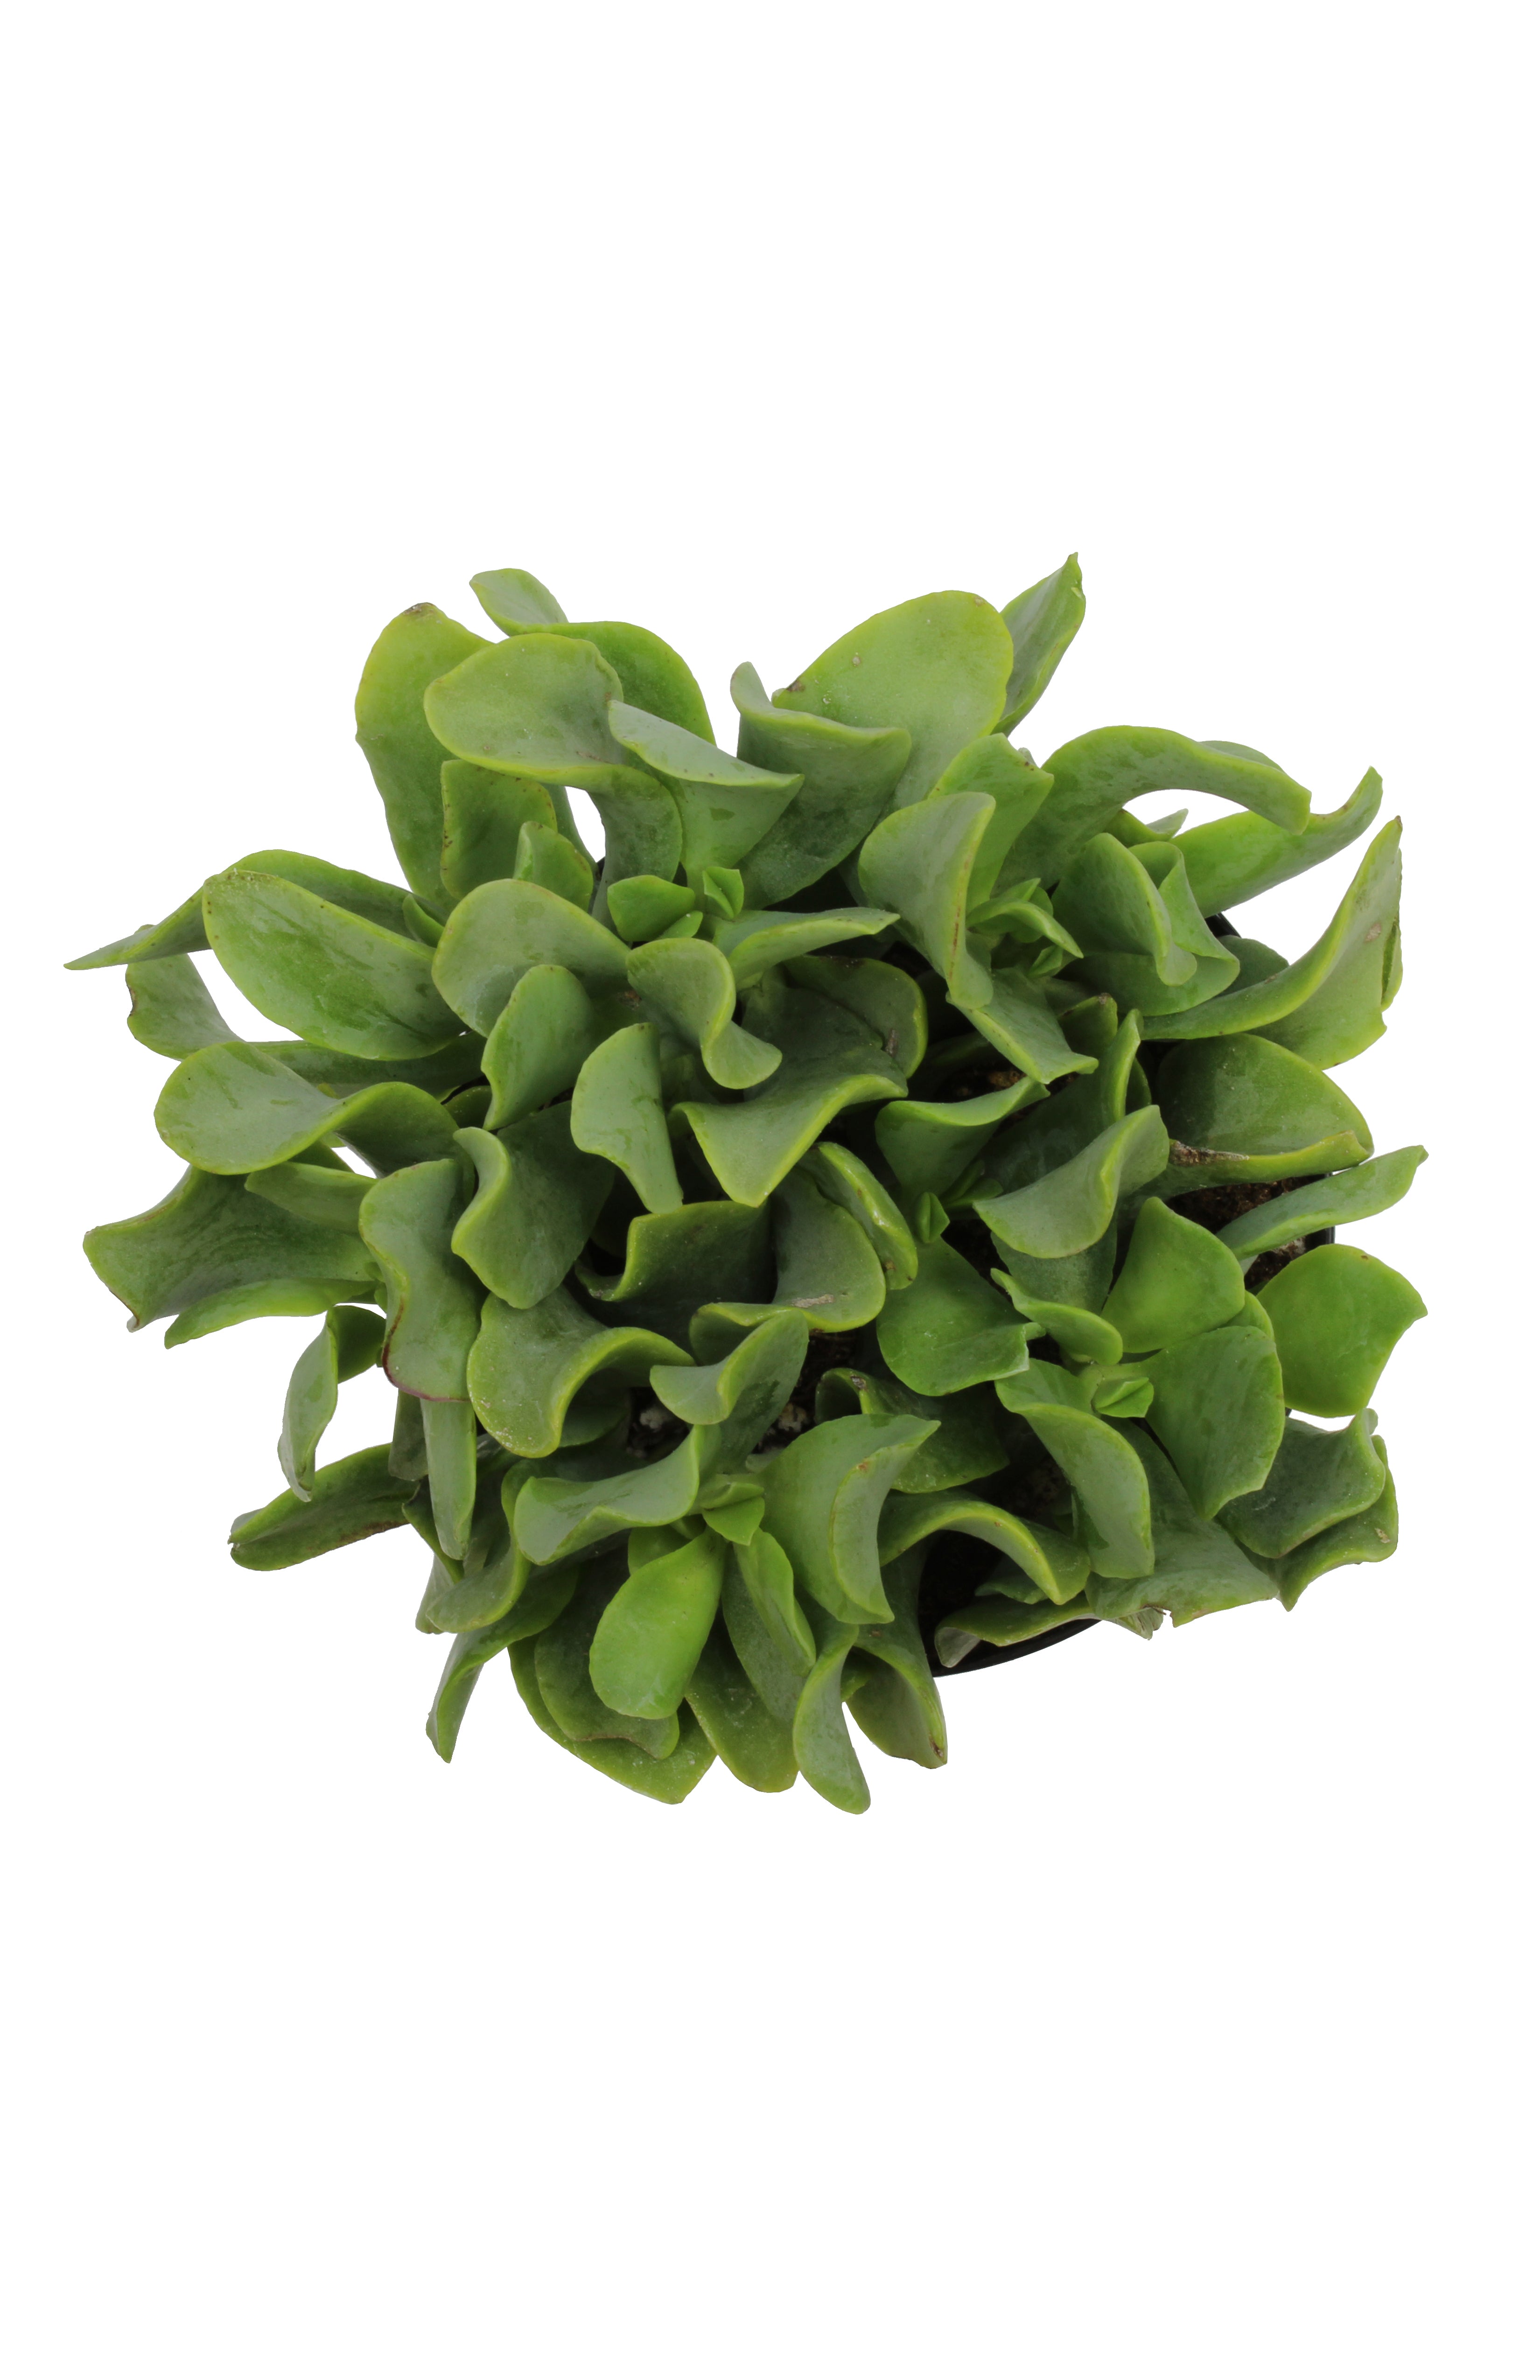 Crassula arborescens undulatifolia “Ripple Jade”™